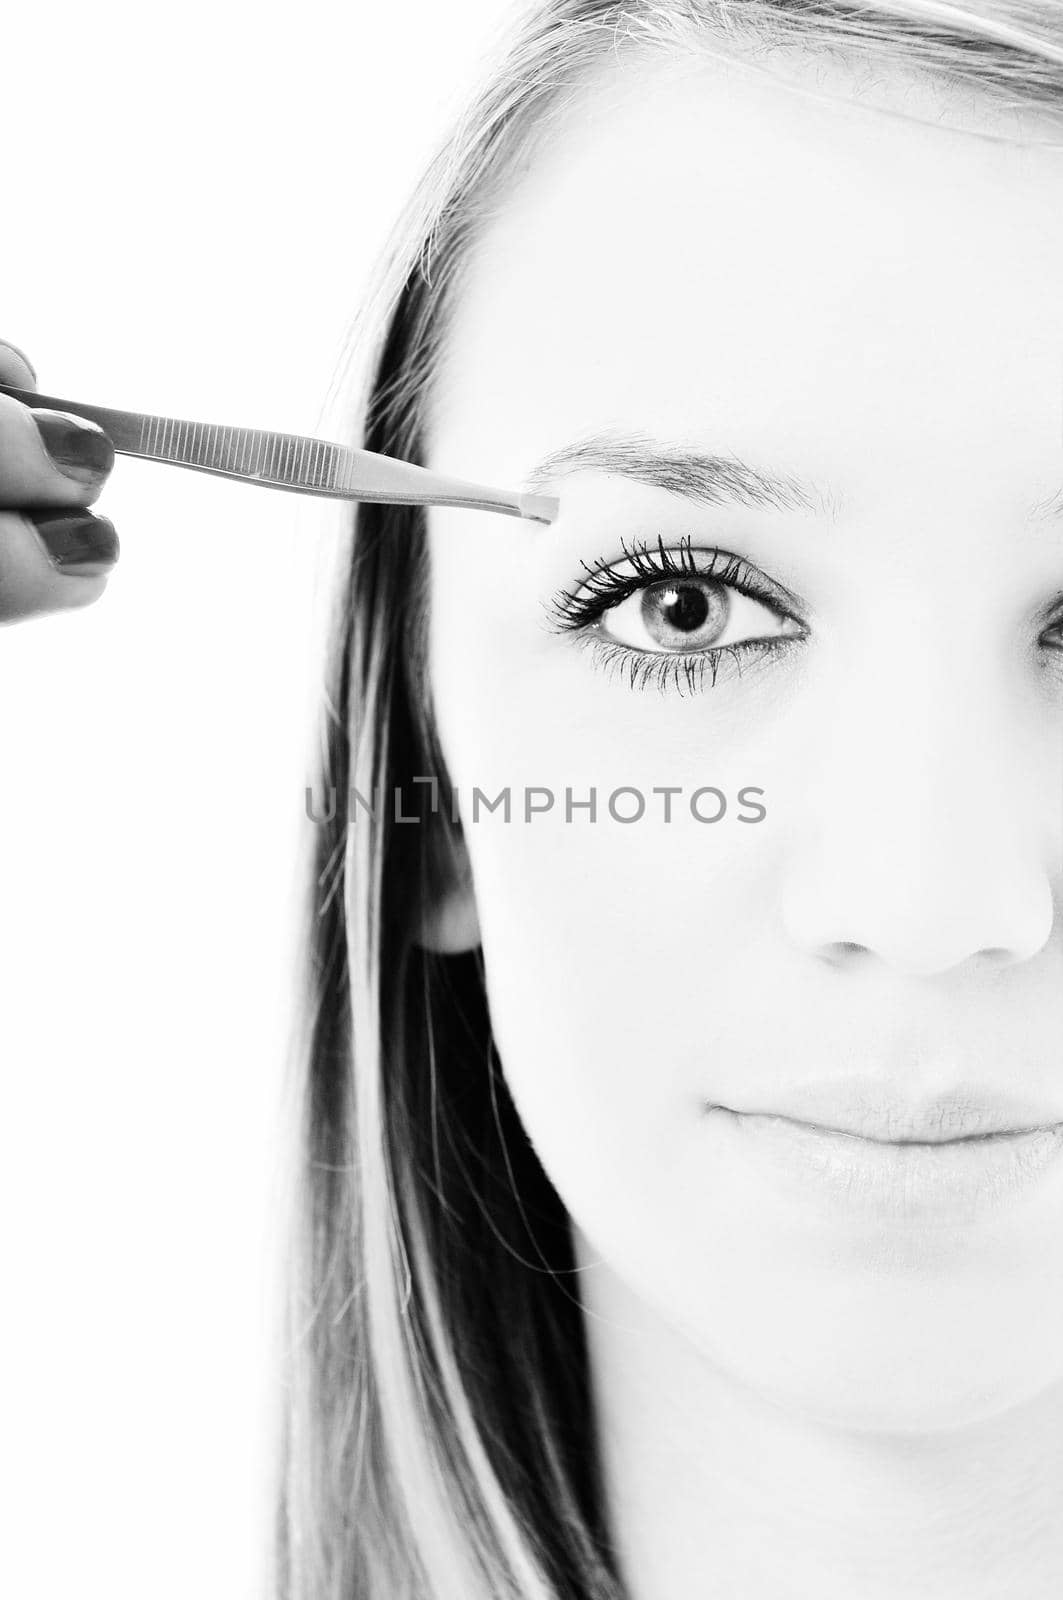 young girl cosmetic beauty isolated eye brow tweezer treatment